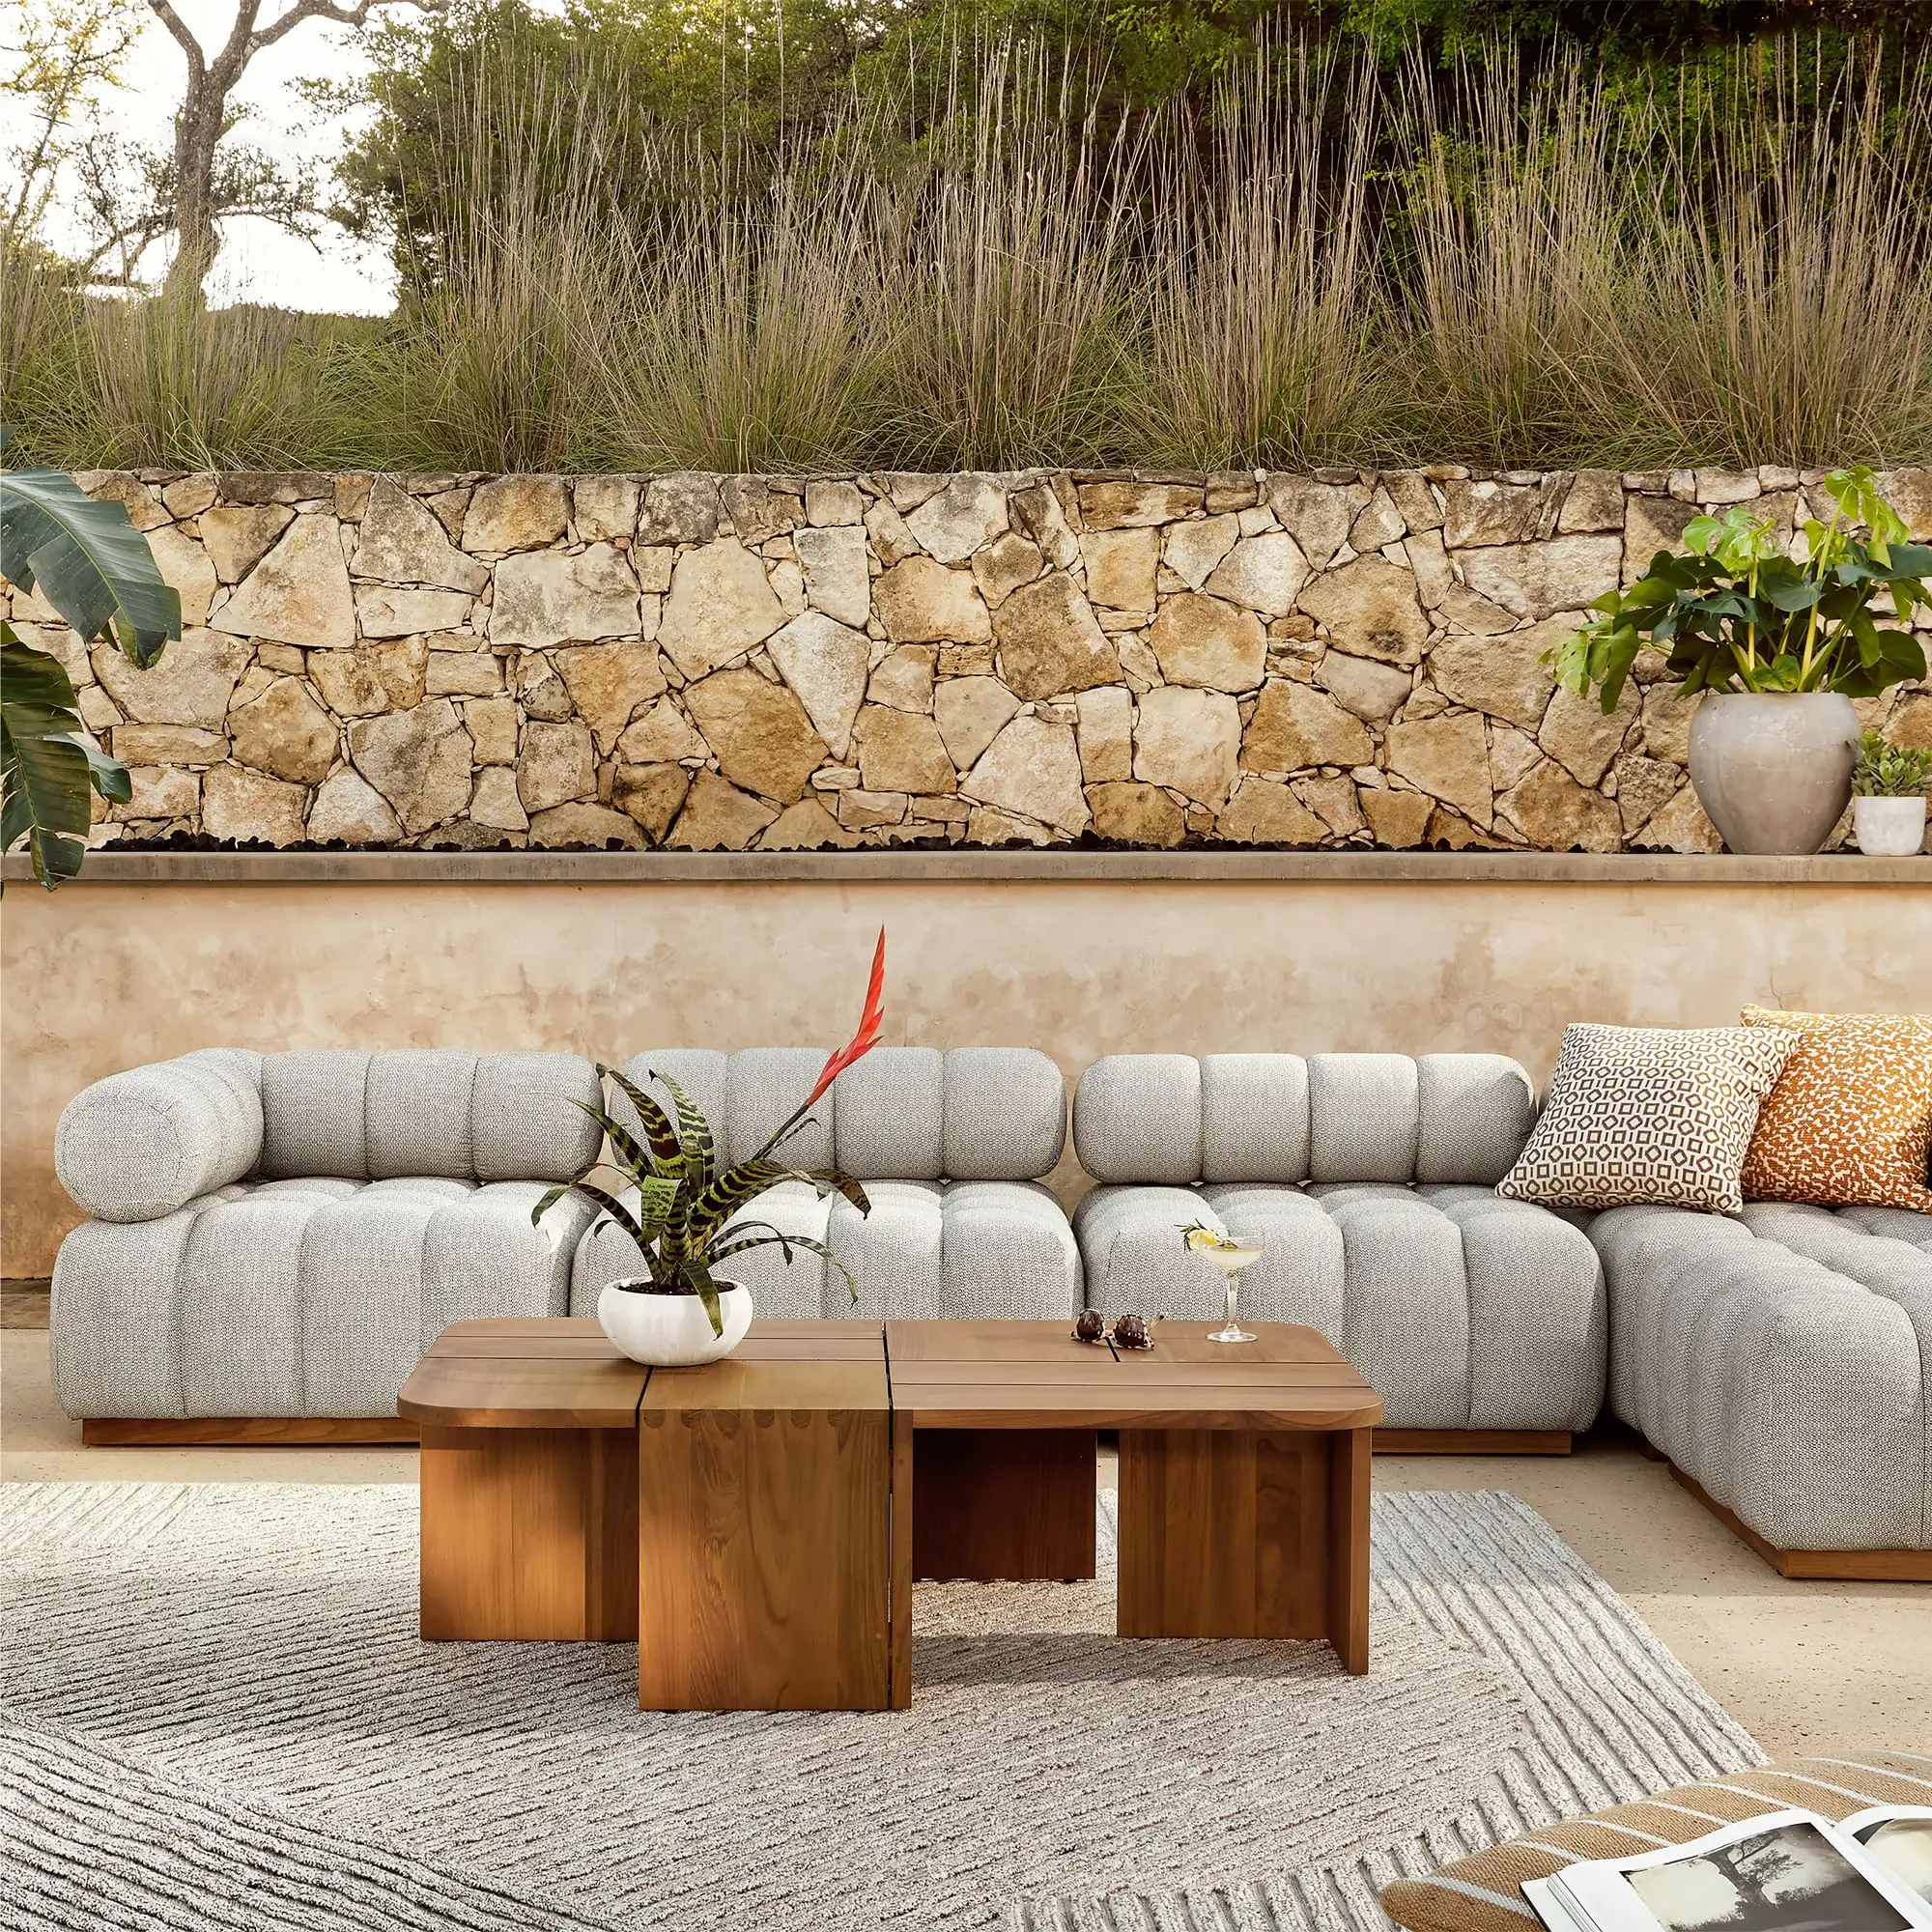 Lania-sofá de jardín de la mejor calidad para exteriores, mueble de madera maciza y colusión a prueba de Sol para uso en exteriores